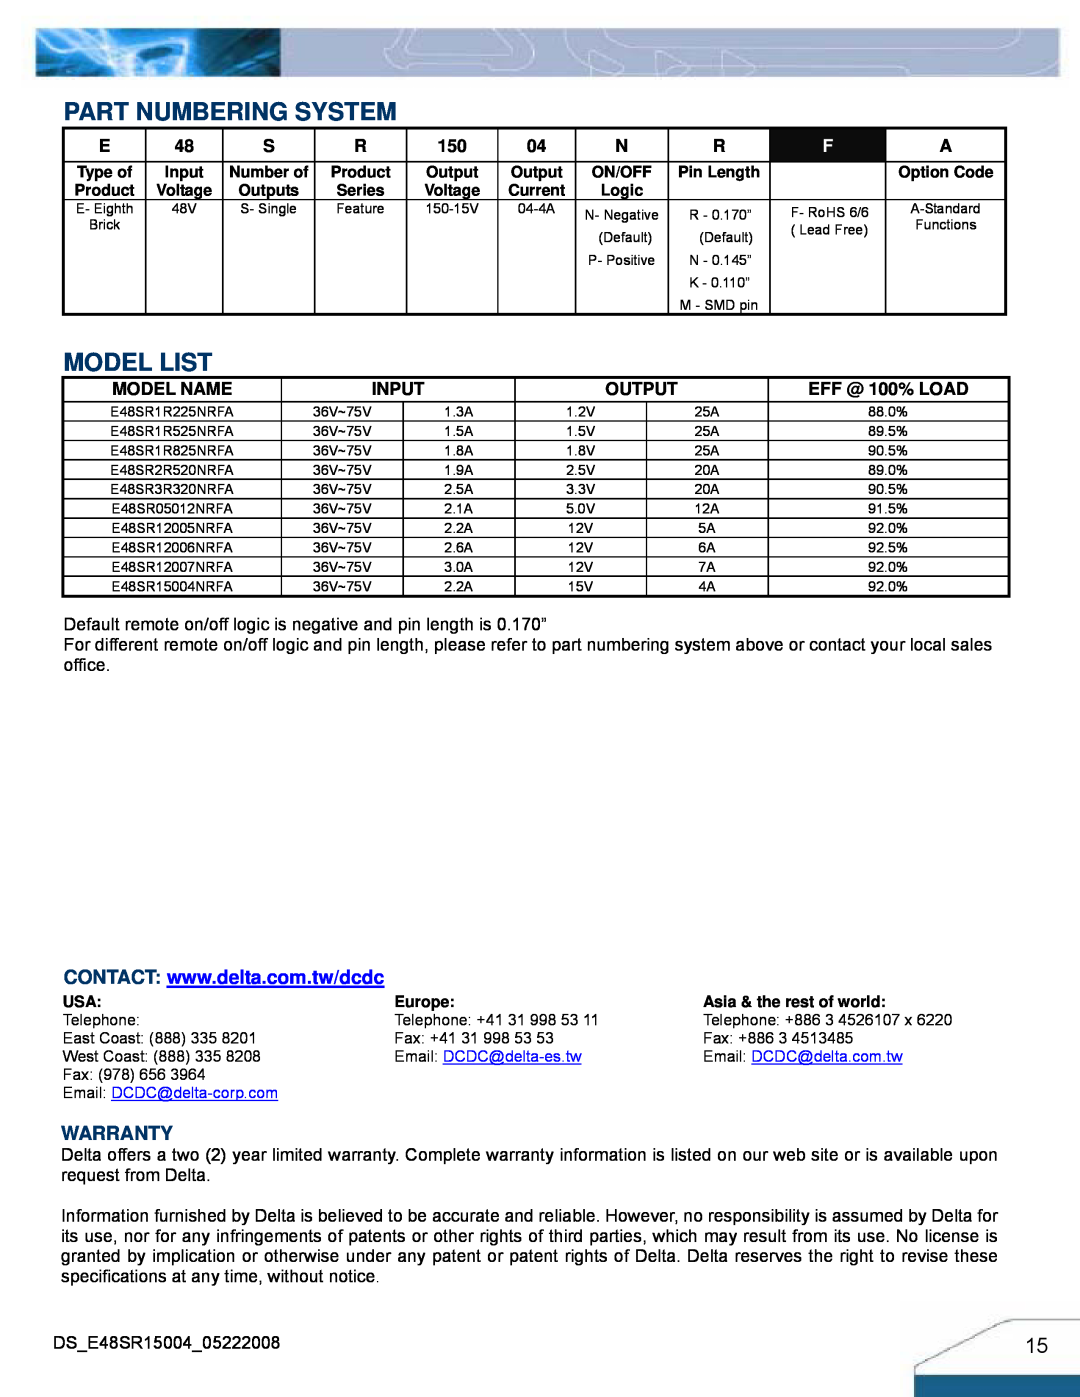 Delta Electronics E48SR manual Part Numbering System, Model List, Warranty, Model Name, Input, Output, EFF @ 100% LOAD 